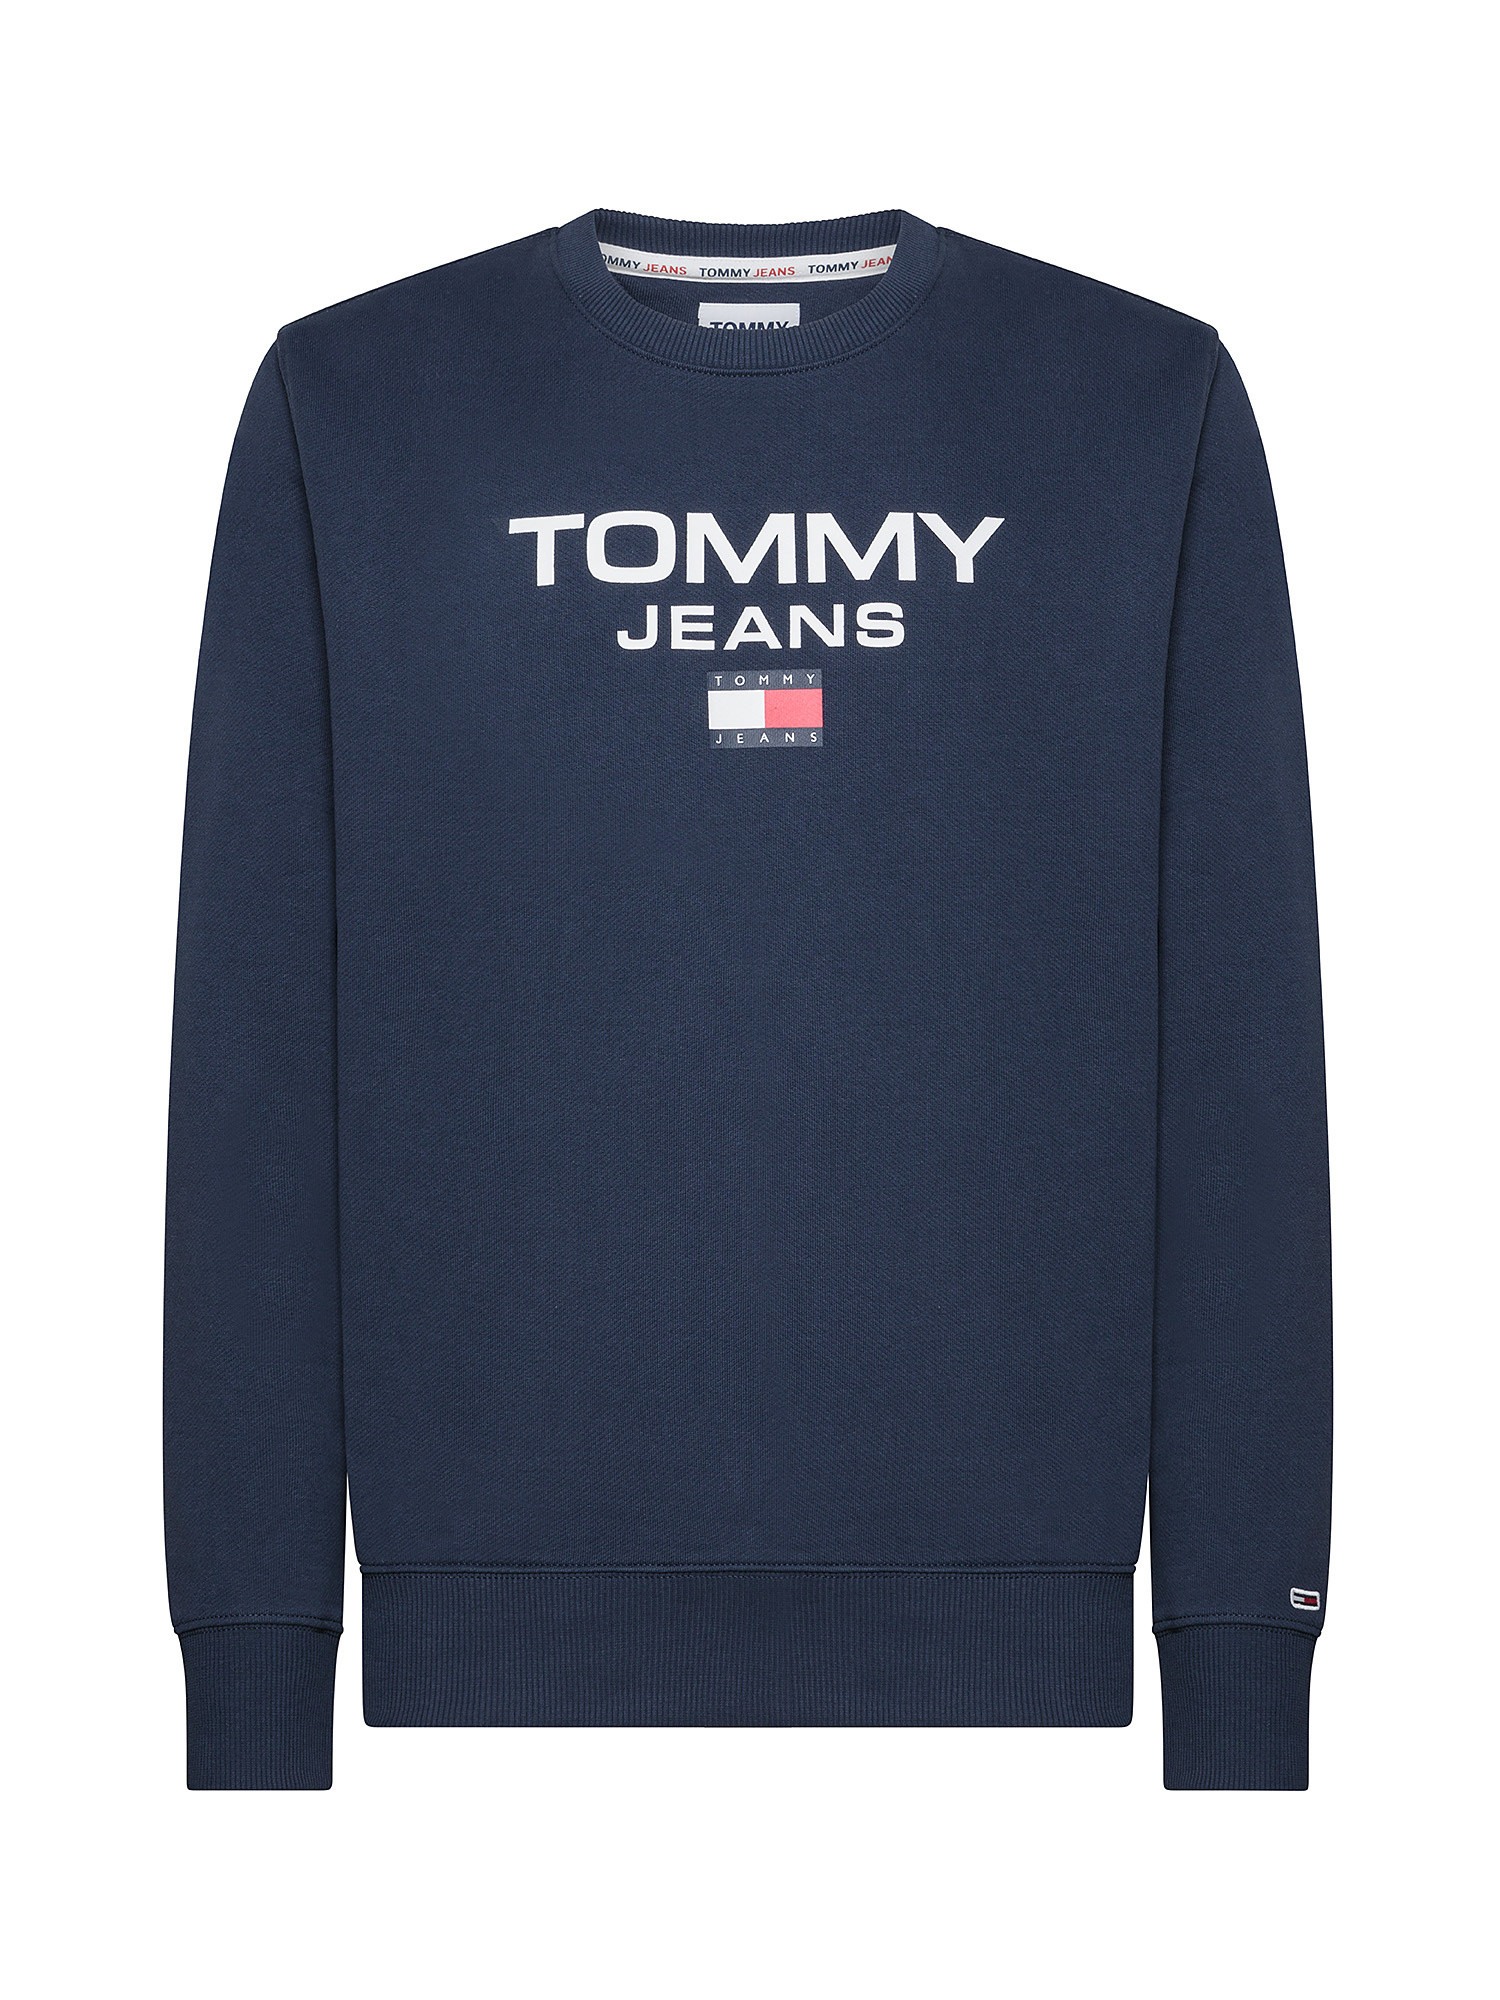 Tommy Jeans - Felpa girocollo in cotone con stampalogo sul davanti, Blu, large image number 0